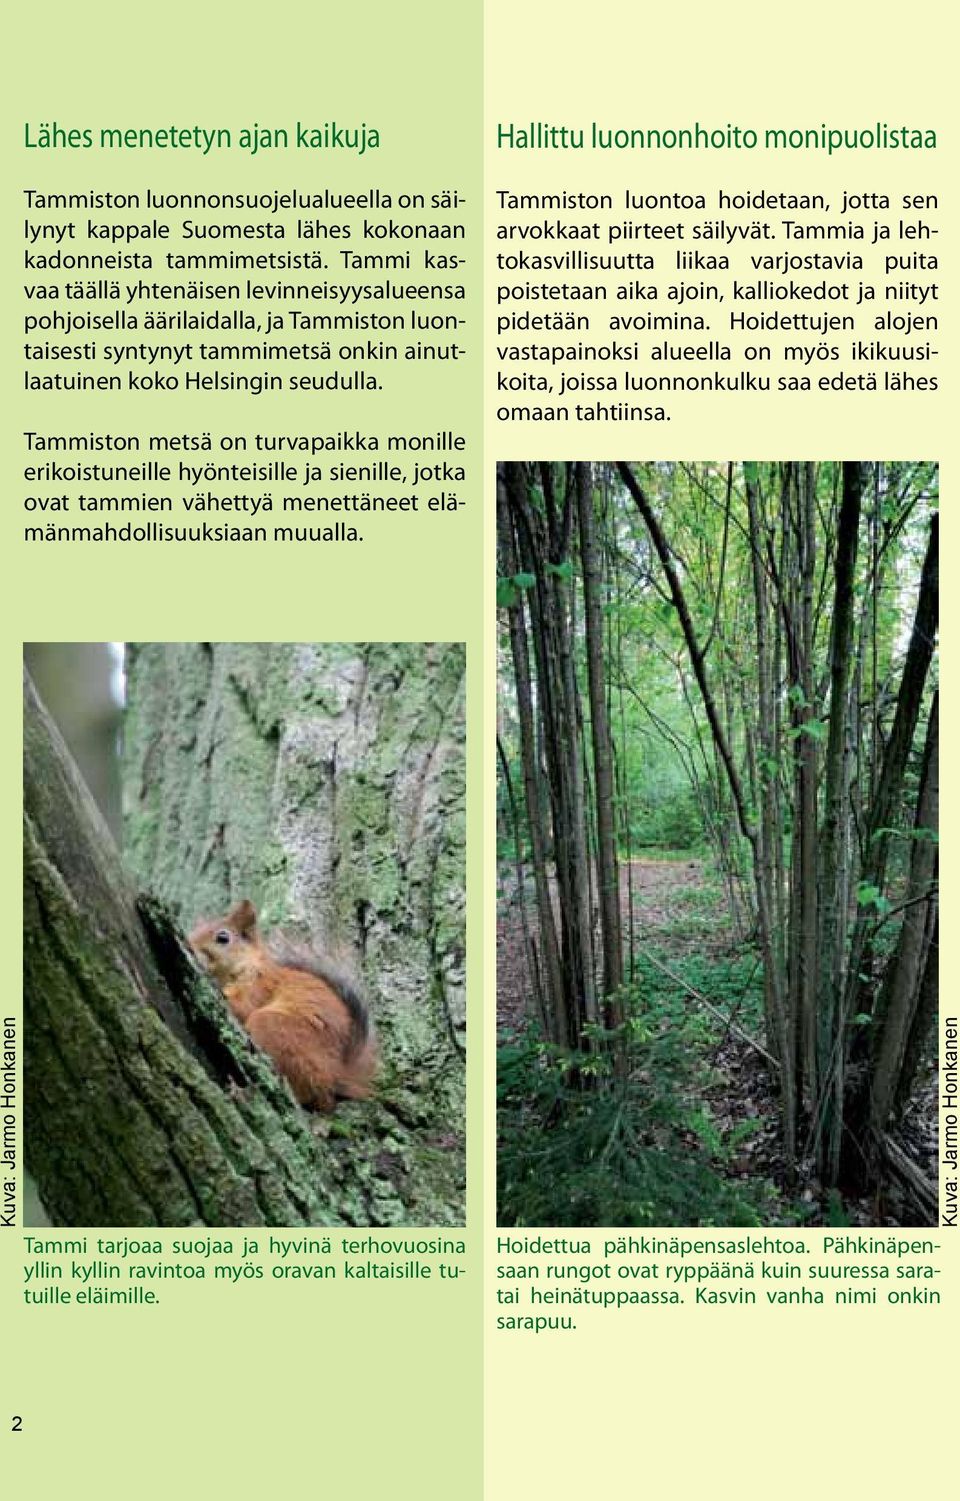 Tammiston metsä on turvapaikka monille erikoistuneille hyönteisille ja sienille, jotka ovat tammien vähettyä menettäneet elämänmahdollisuuksiaan muualla.